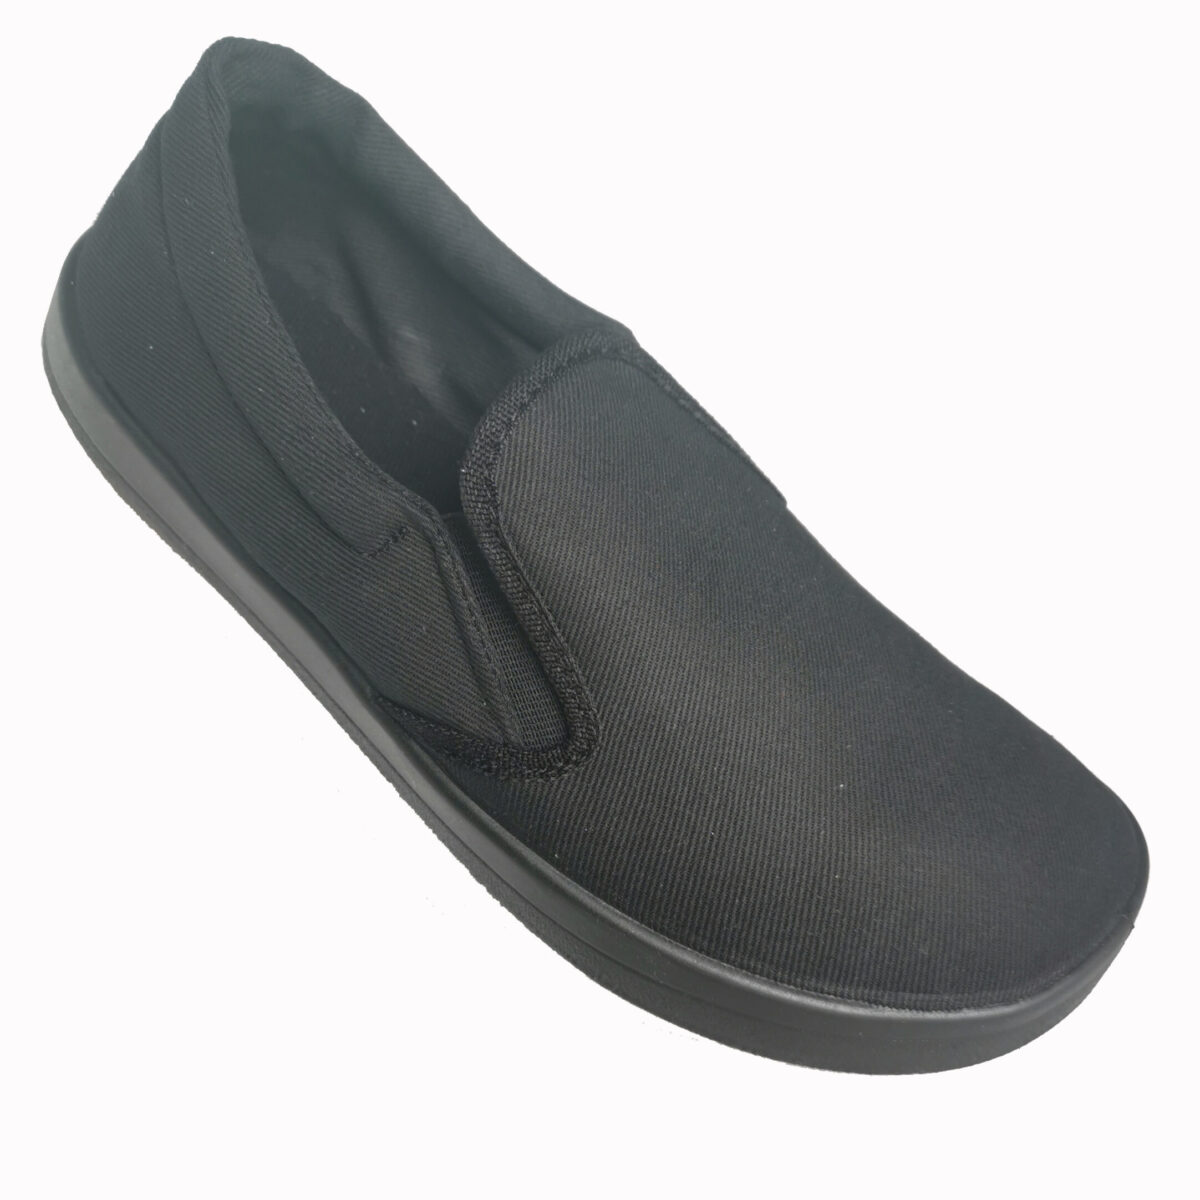 Anatomic slip-on, must, musta tallaga Sisejalats/suvi - HellyK - Kvaliteetsed lasteriided, villariided, barefoot jalatsid